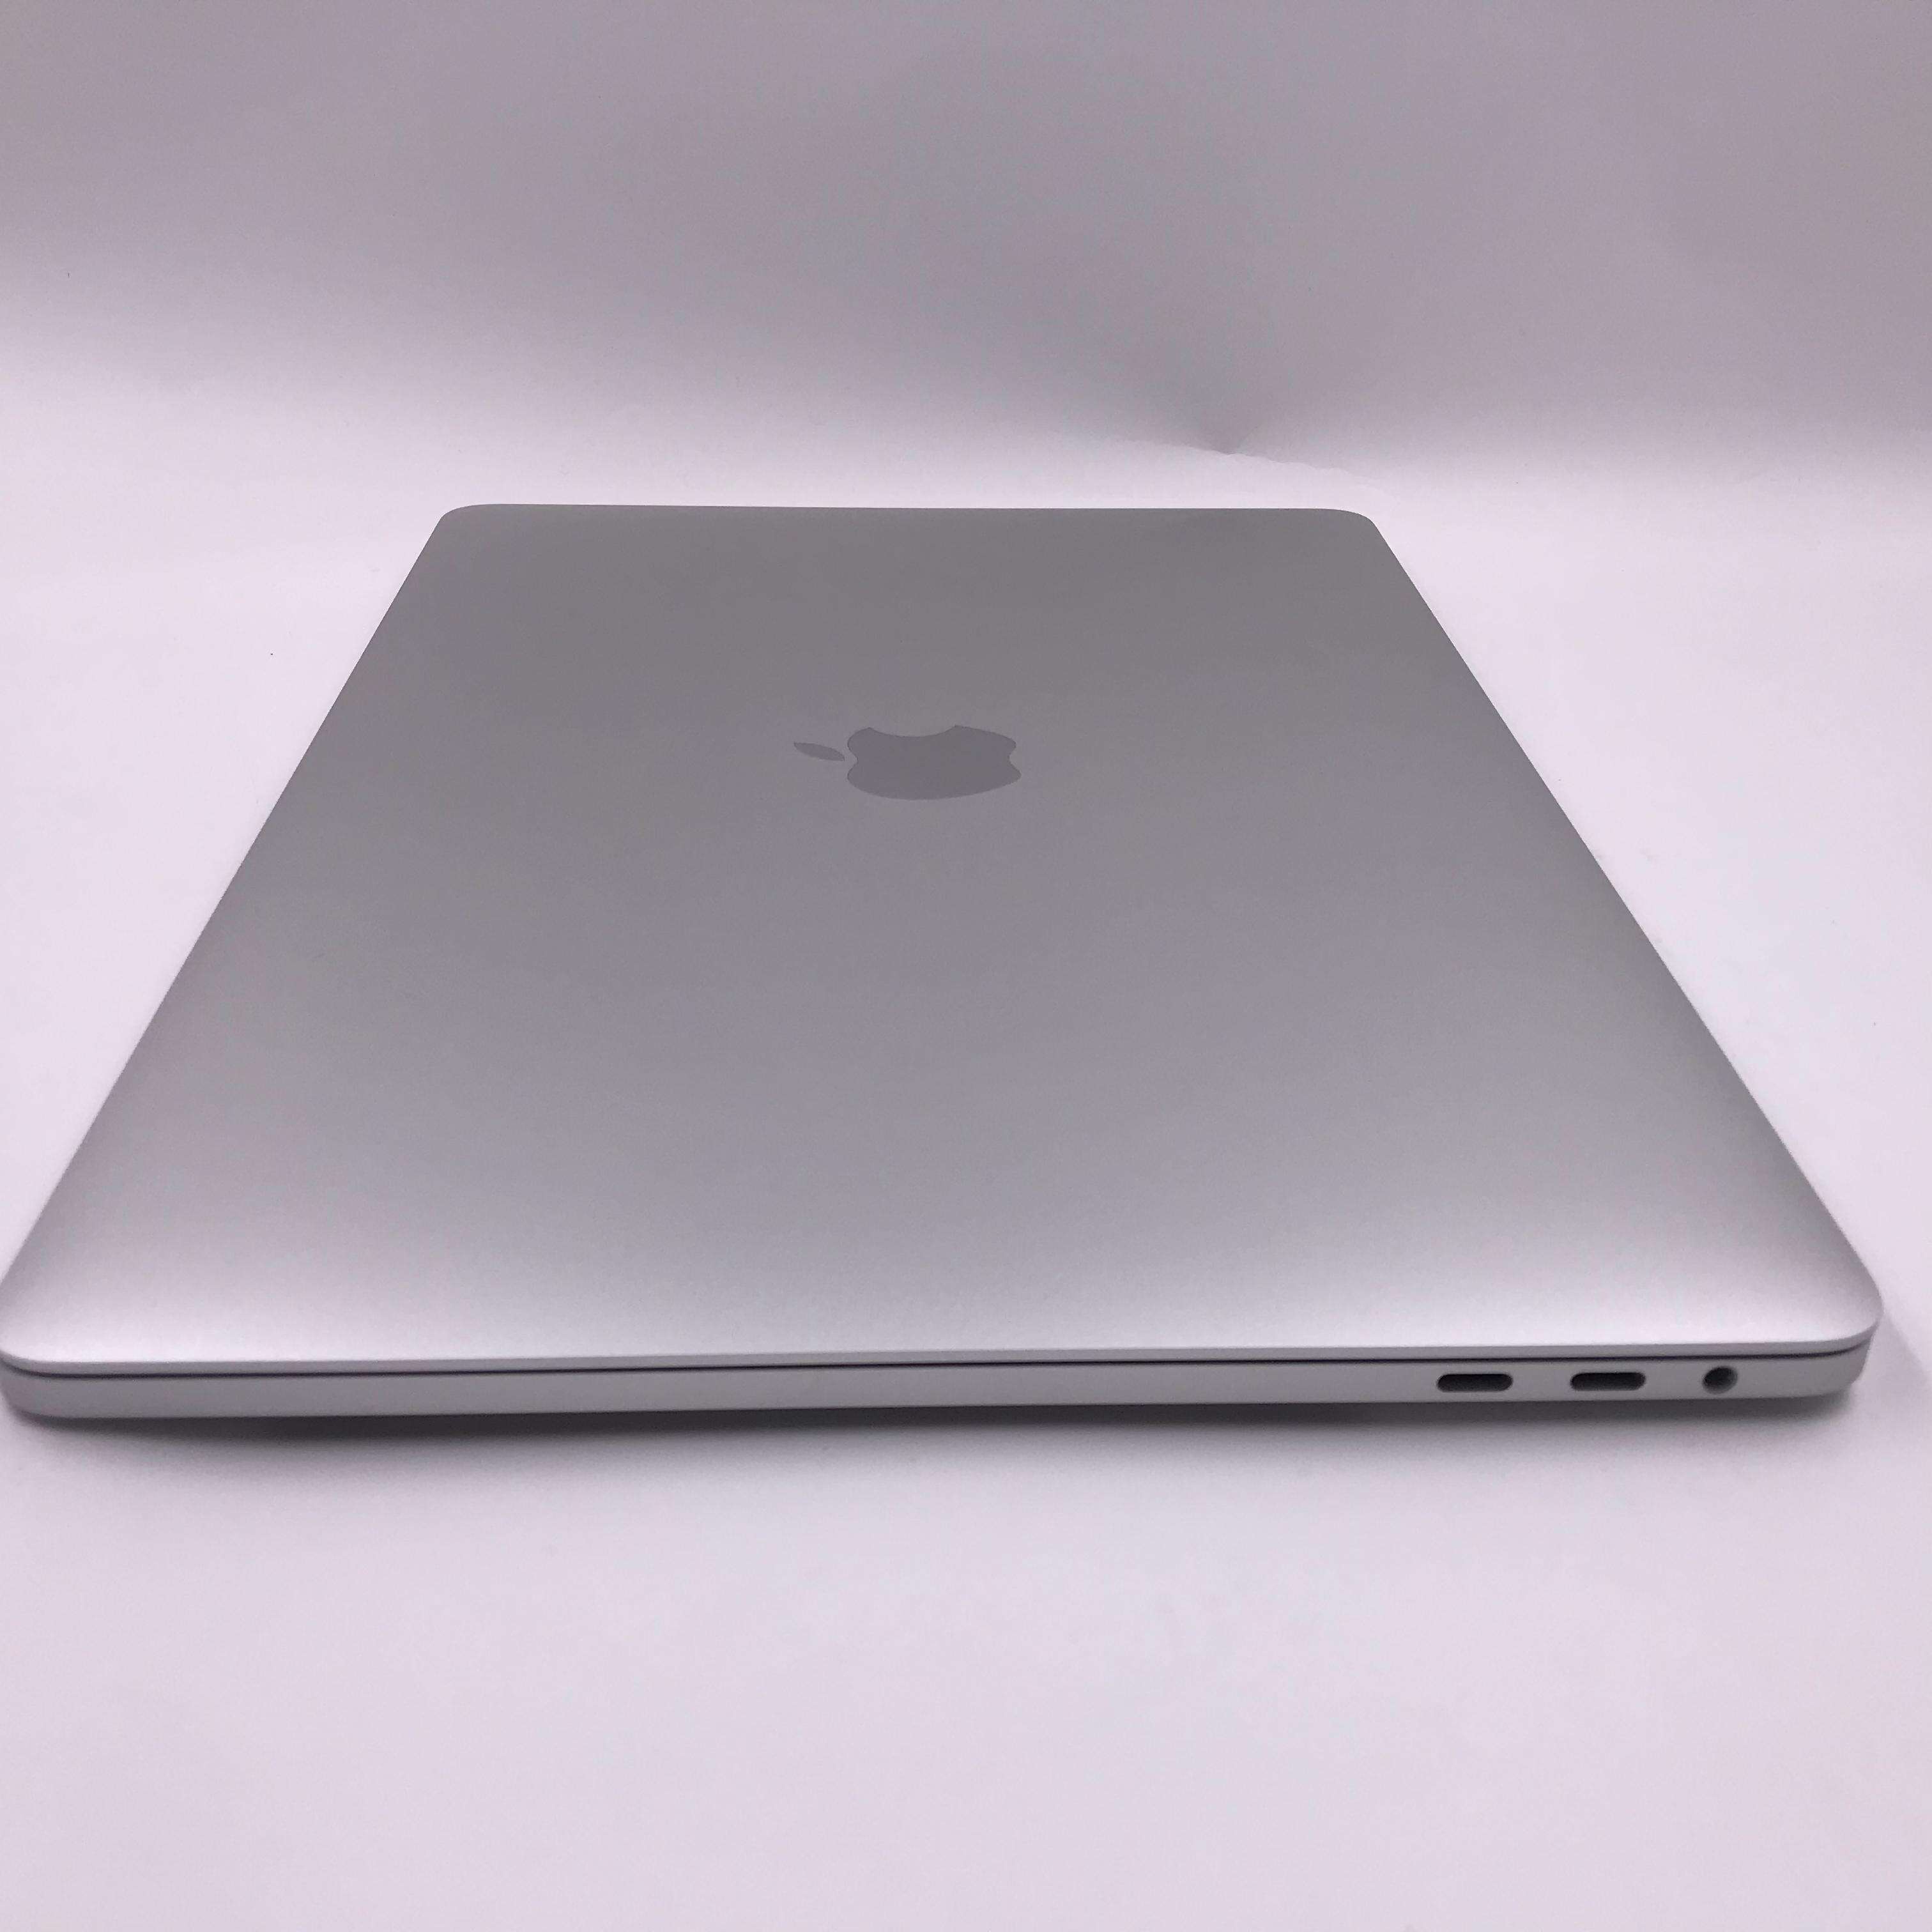 MacBook Pro (13",2017) 硬盘_256G/内存_8G/CPU_3.1 GHz Intel Core i5/显卡_Intel Iris Plus Graphics 650 国行